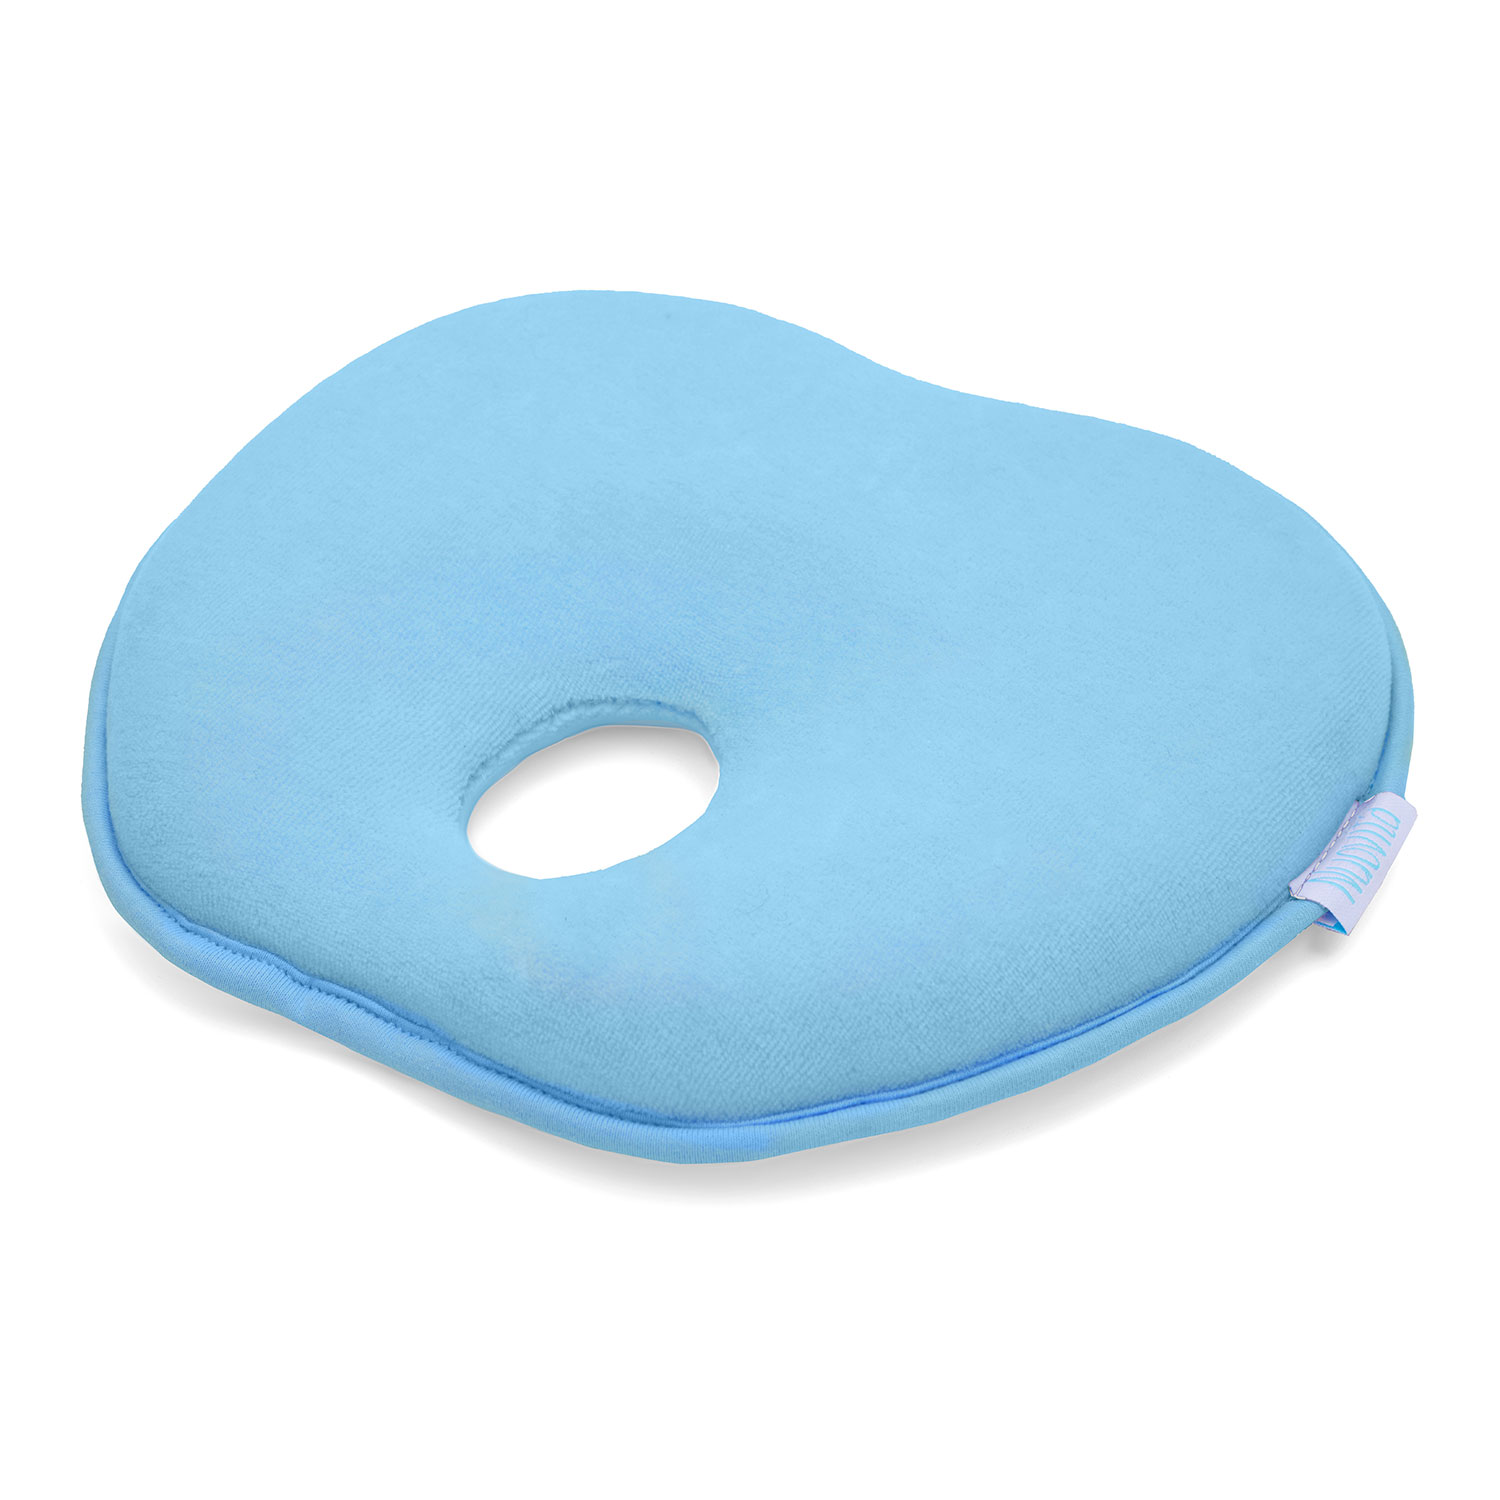 Подушка для новорожденного Nuovita NEONUTTI Mela Memoria Blu/Голубой подушка для новорожденного nuovita neonutti mela memoria blu голубой